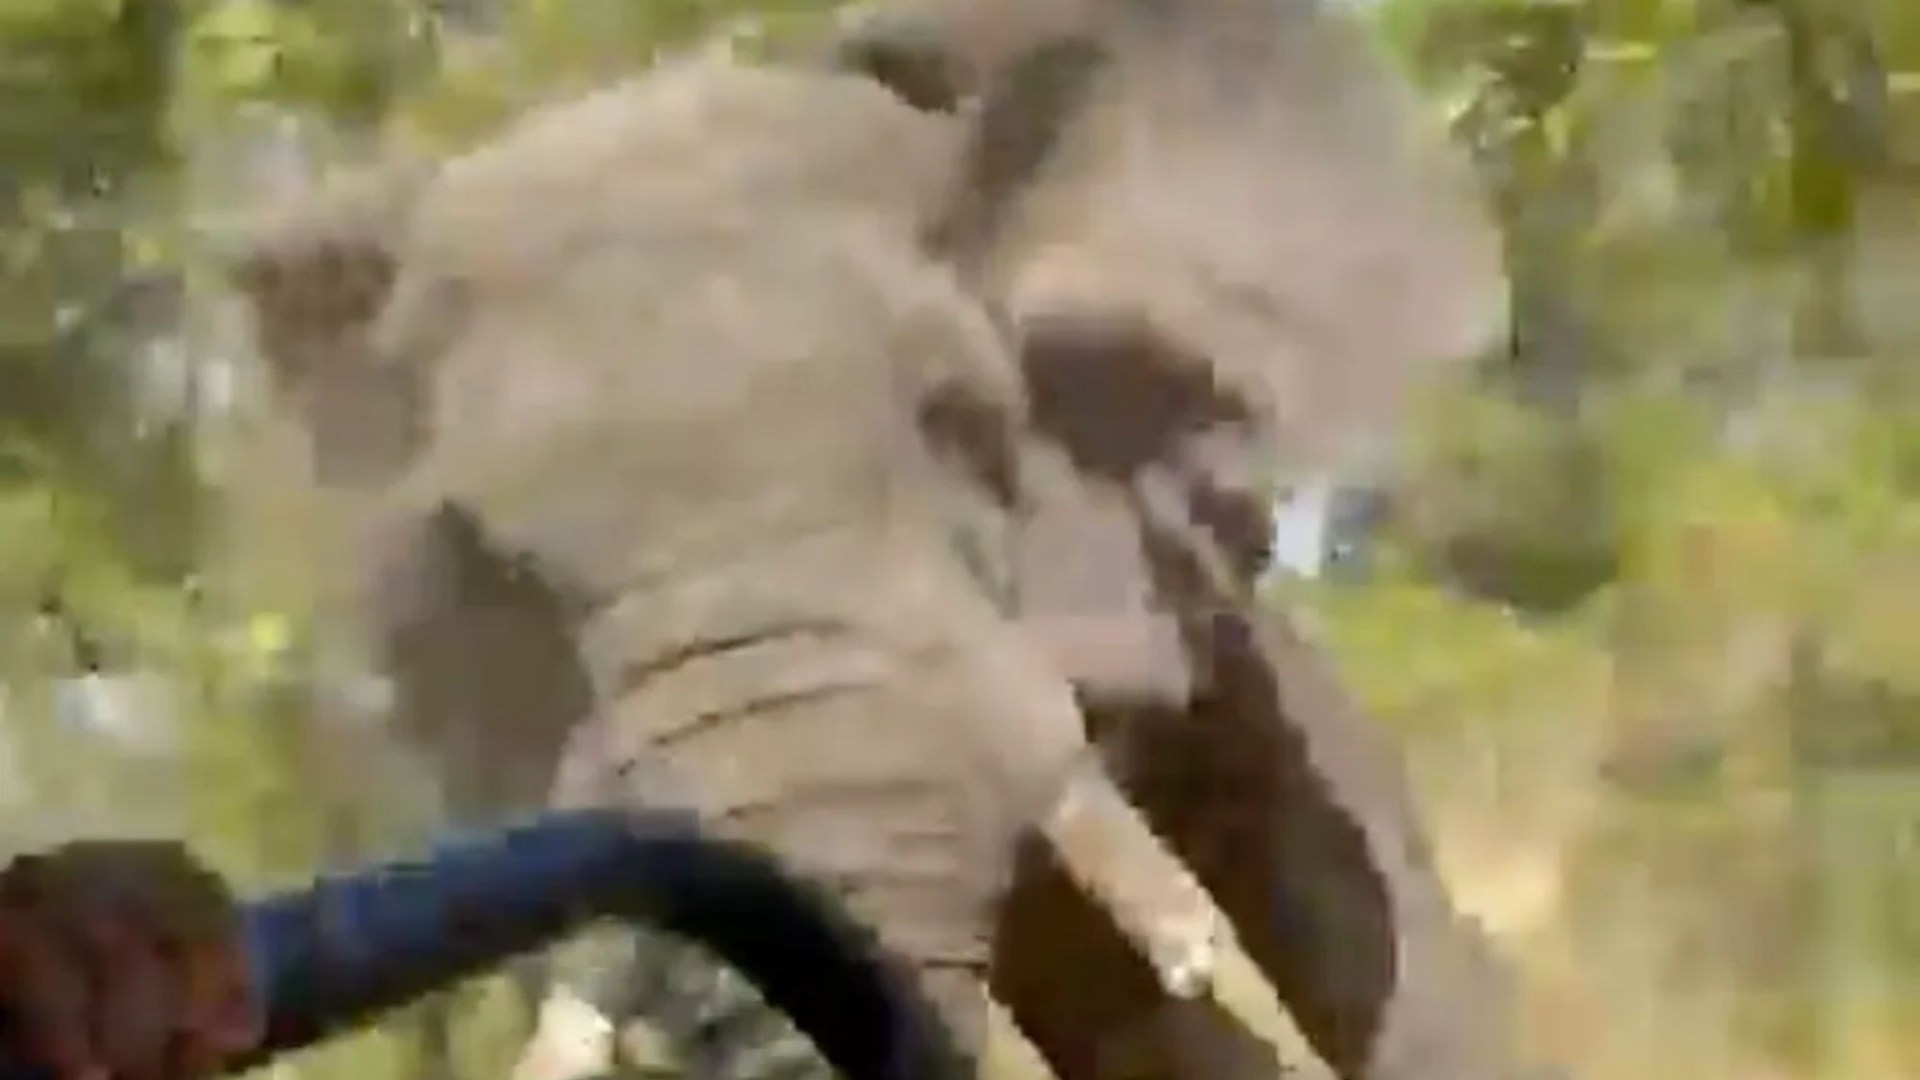 Momento de terror: un elefante enloquecido voltea un camión de safari que mata a un turista estadounidense de 80 años después de una aterradora persecución de 1,5 millas